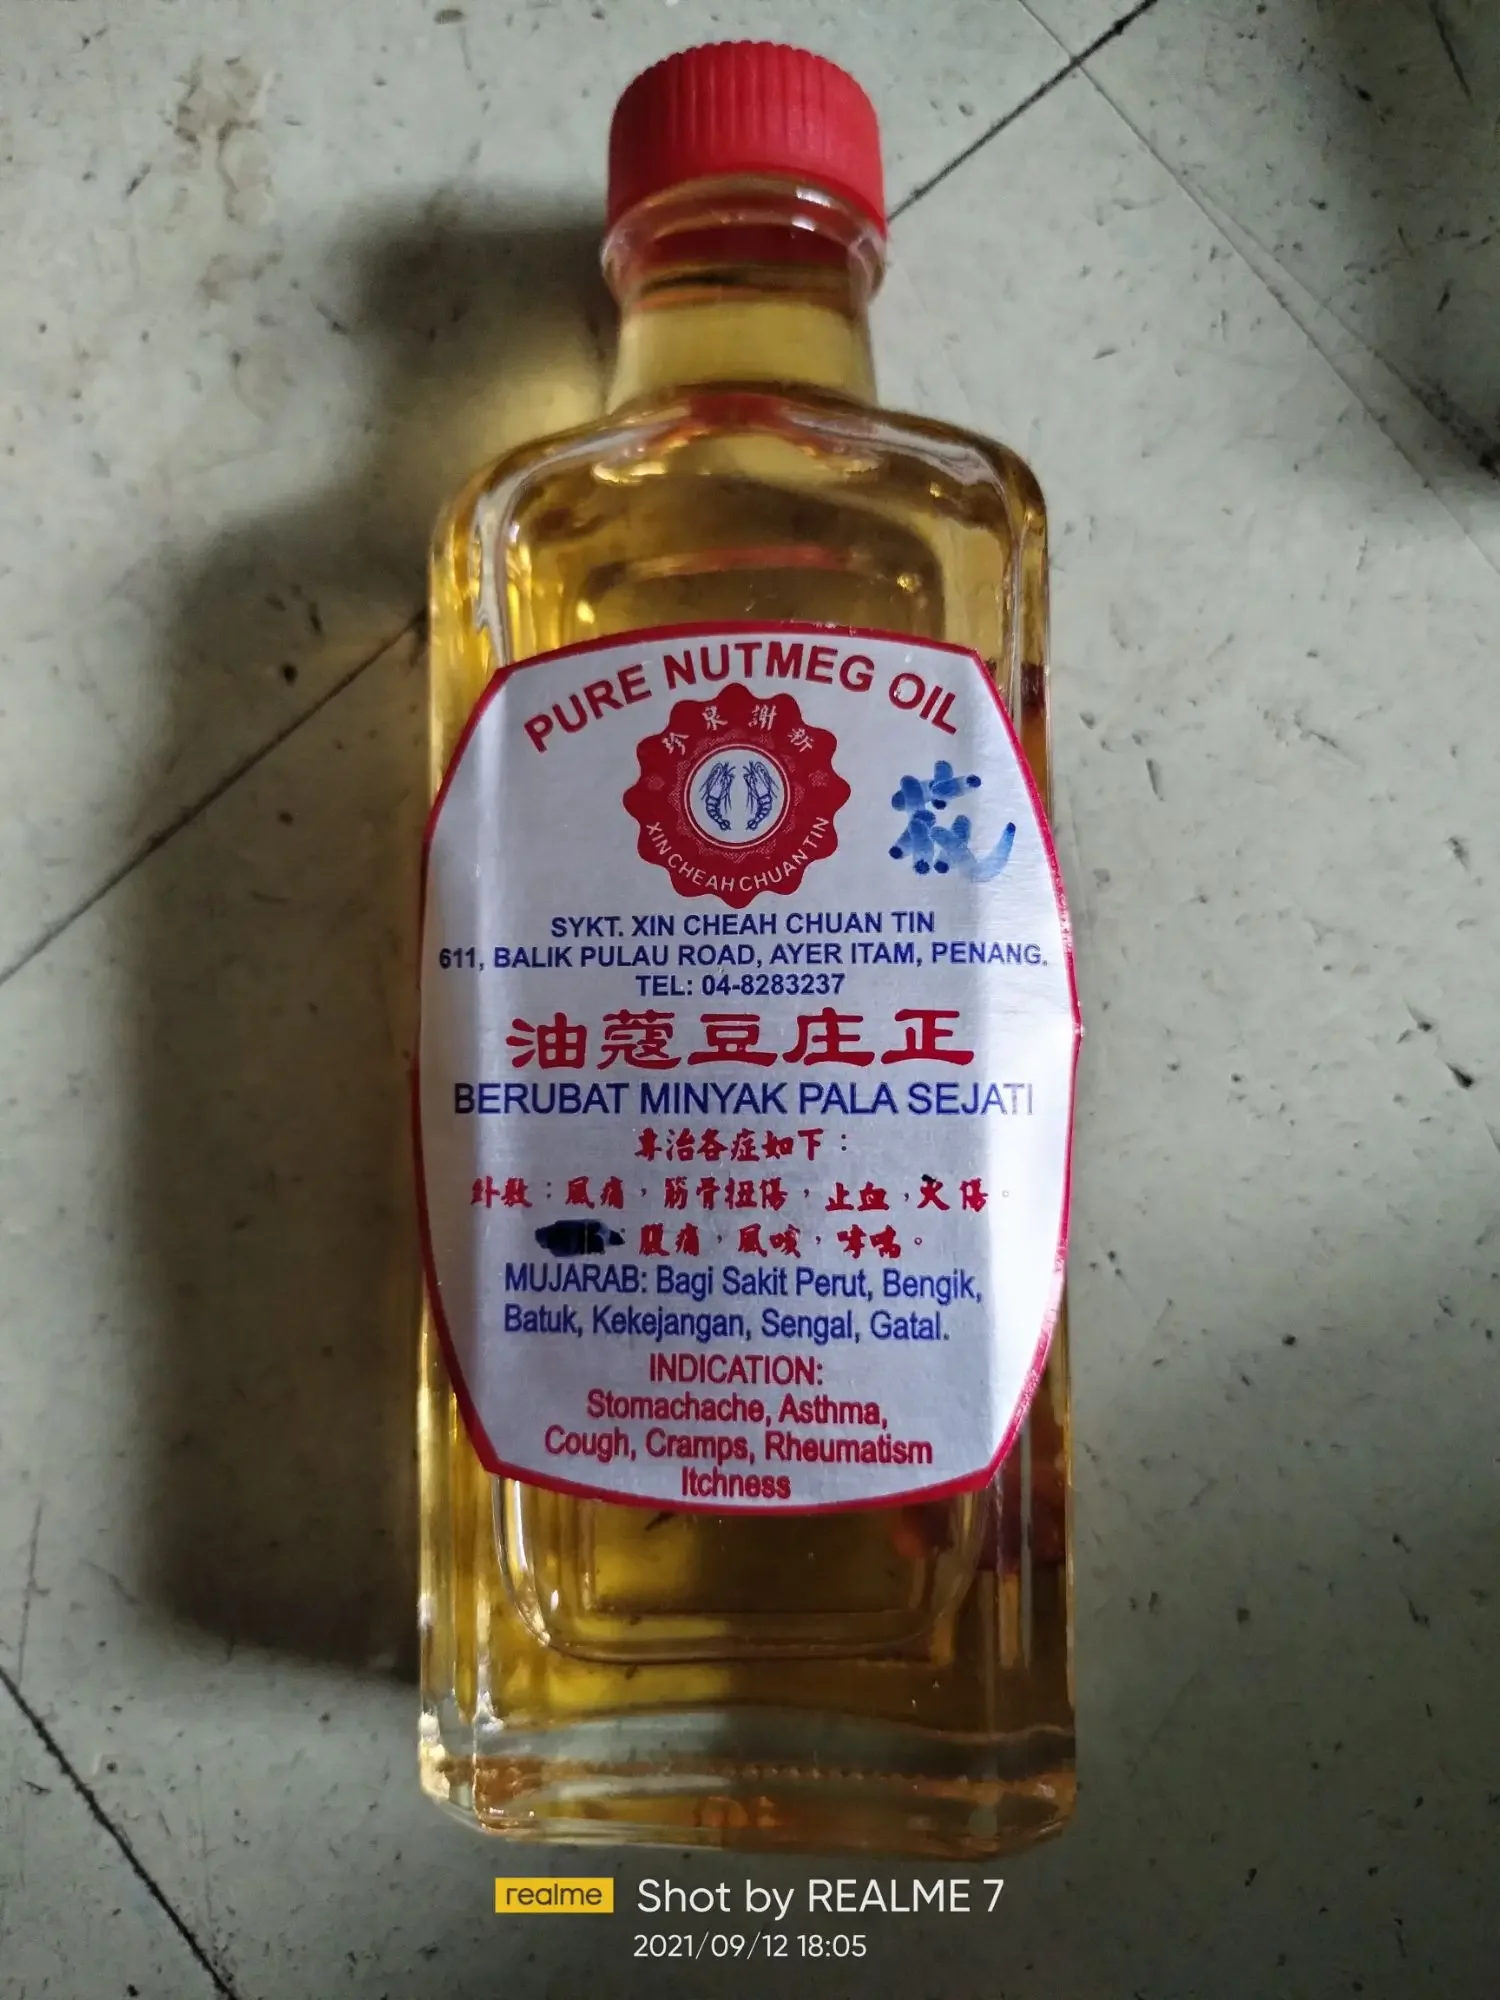 Xin Cheah Chuan Tin Nutmeg Oil (Kek Lok Si Penang) 新谢泉珍豆蔻油 (槟城极乐寺 )